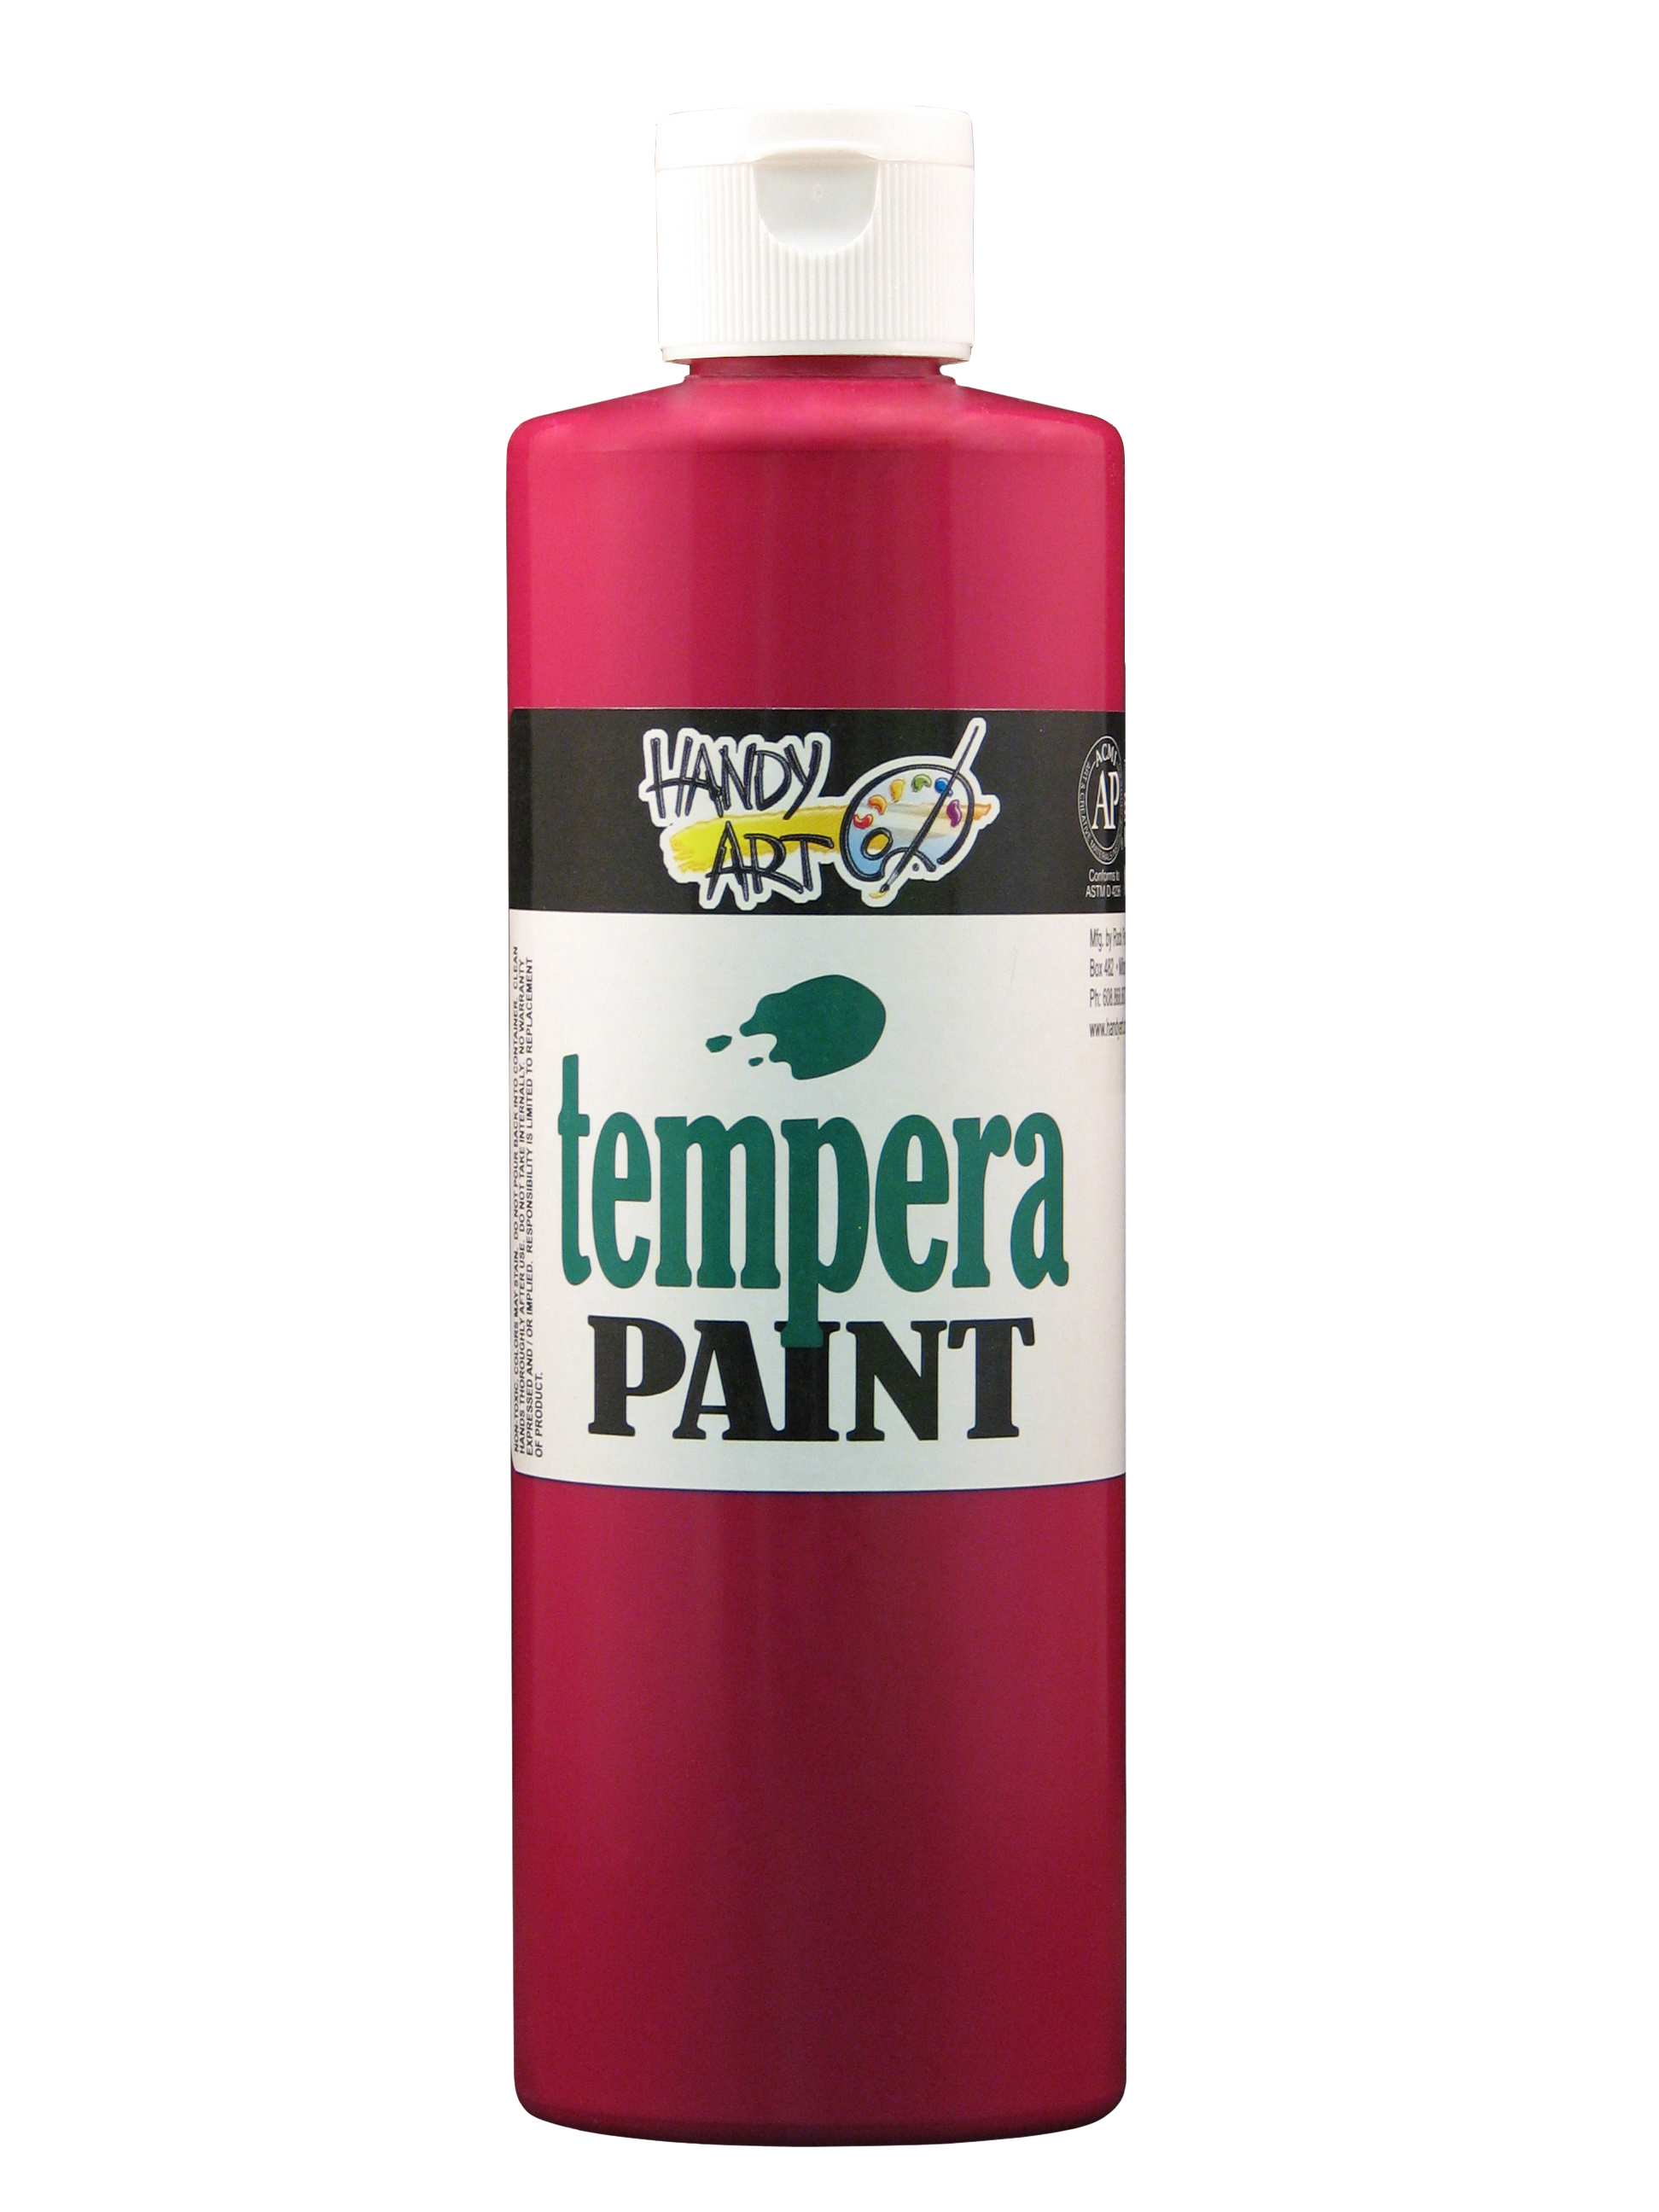 Handy Art 201025 Premium Tempera Paint Magenta - 16oz